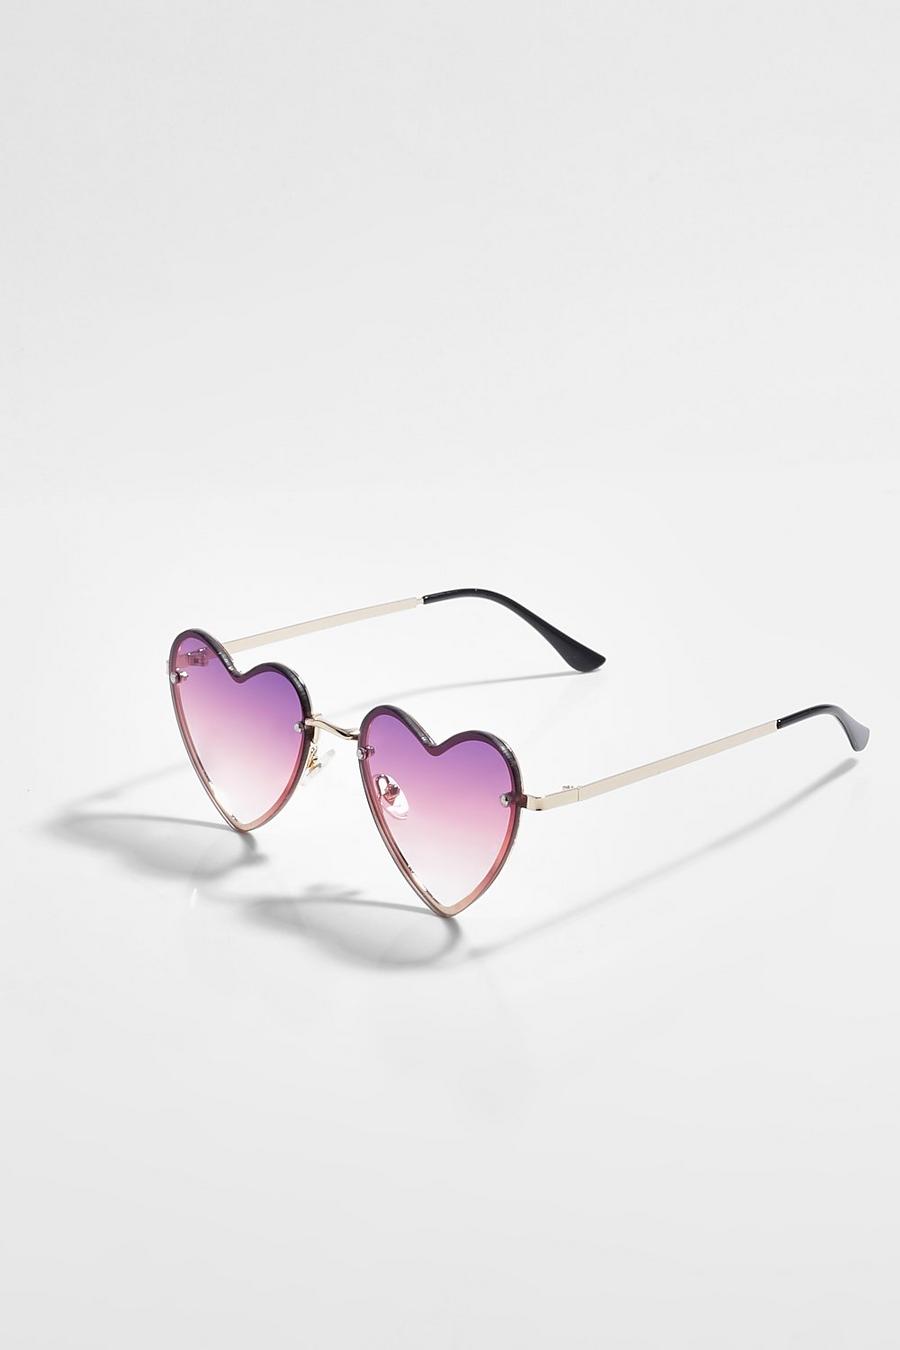 מולטי multi משקפי שמש בצורת לב בגווני אומברה